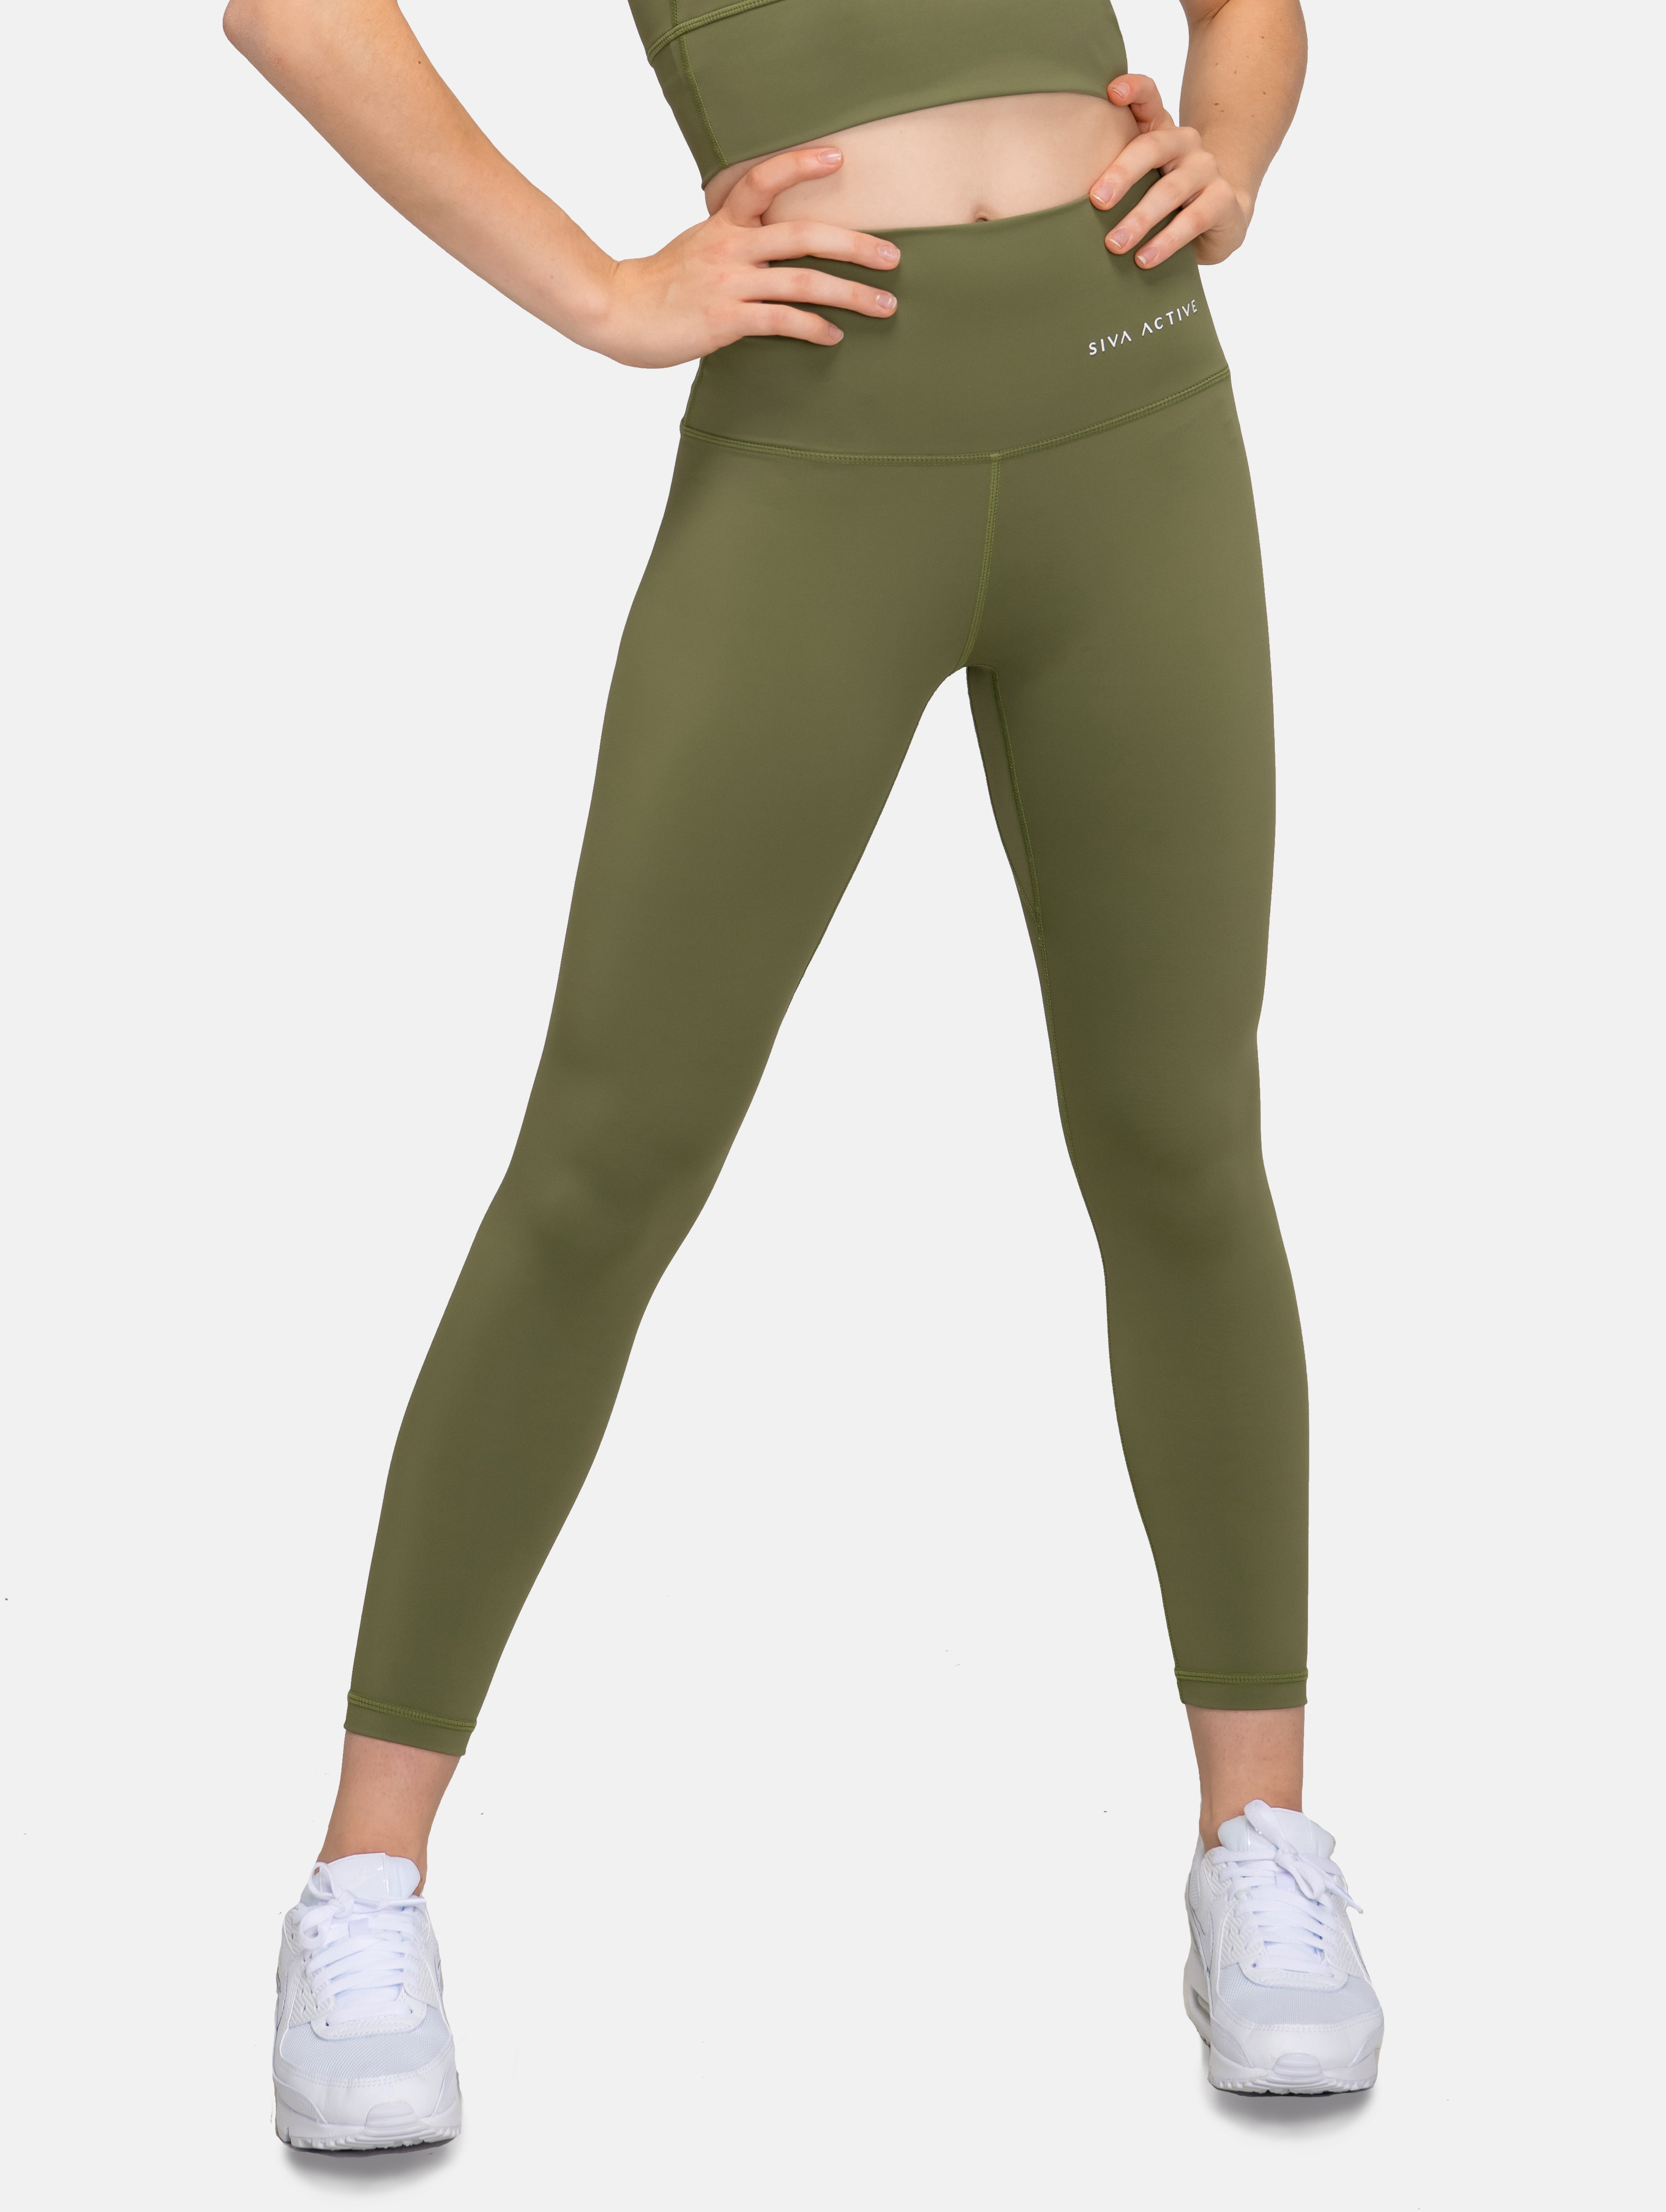 Nivina - Cedar - Green leggings with flare - Molo